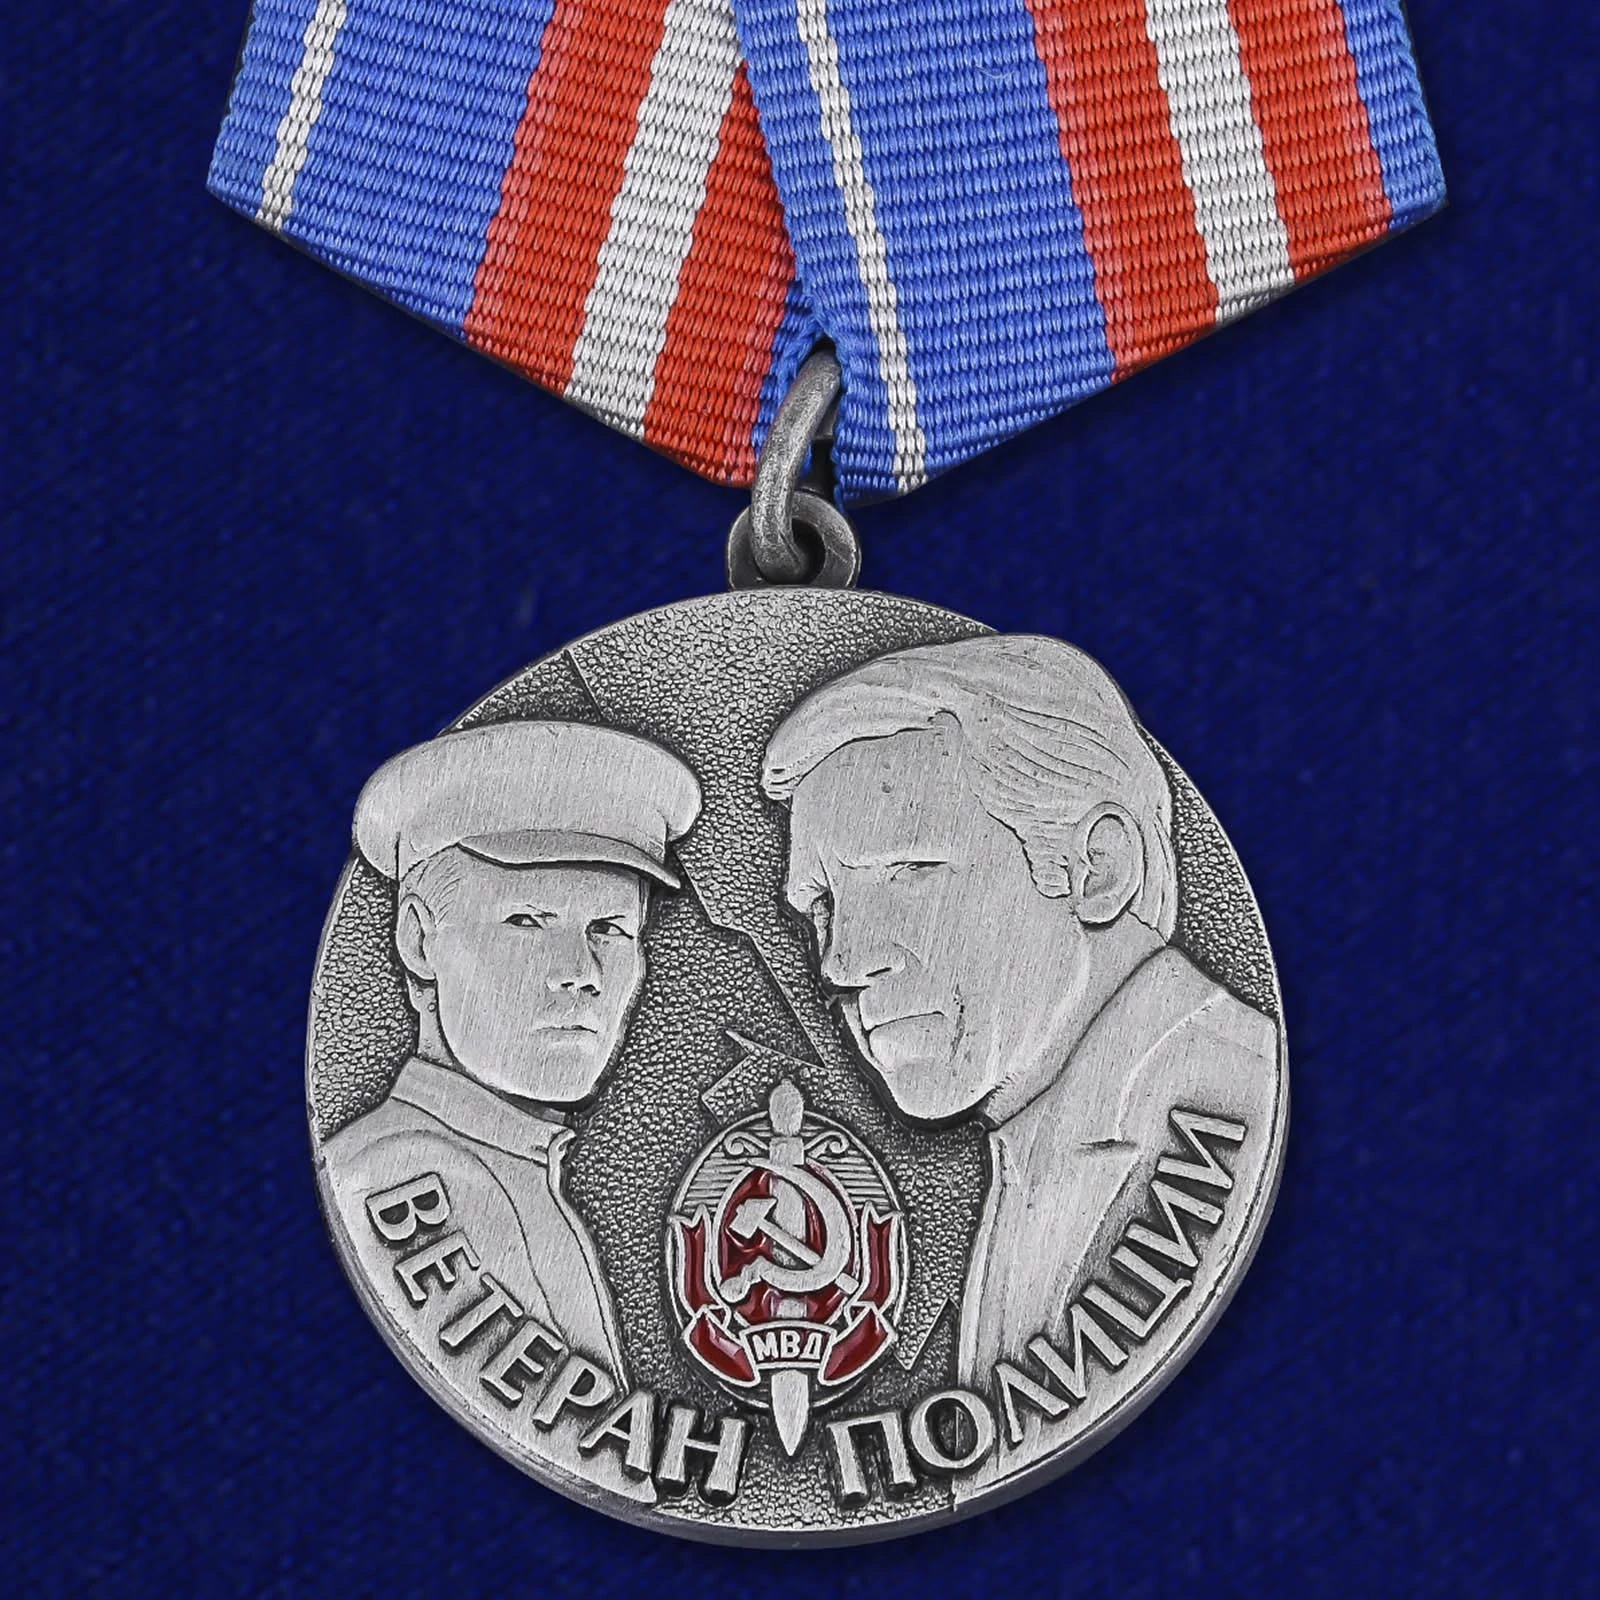 Медаль "Ветеран полиции"